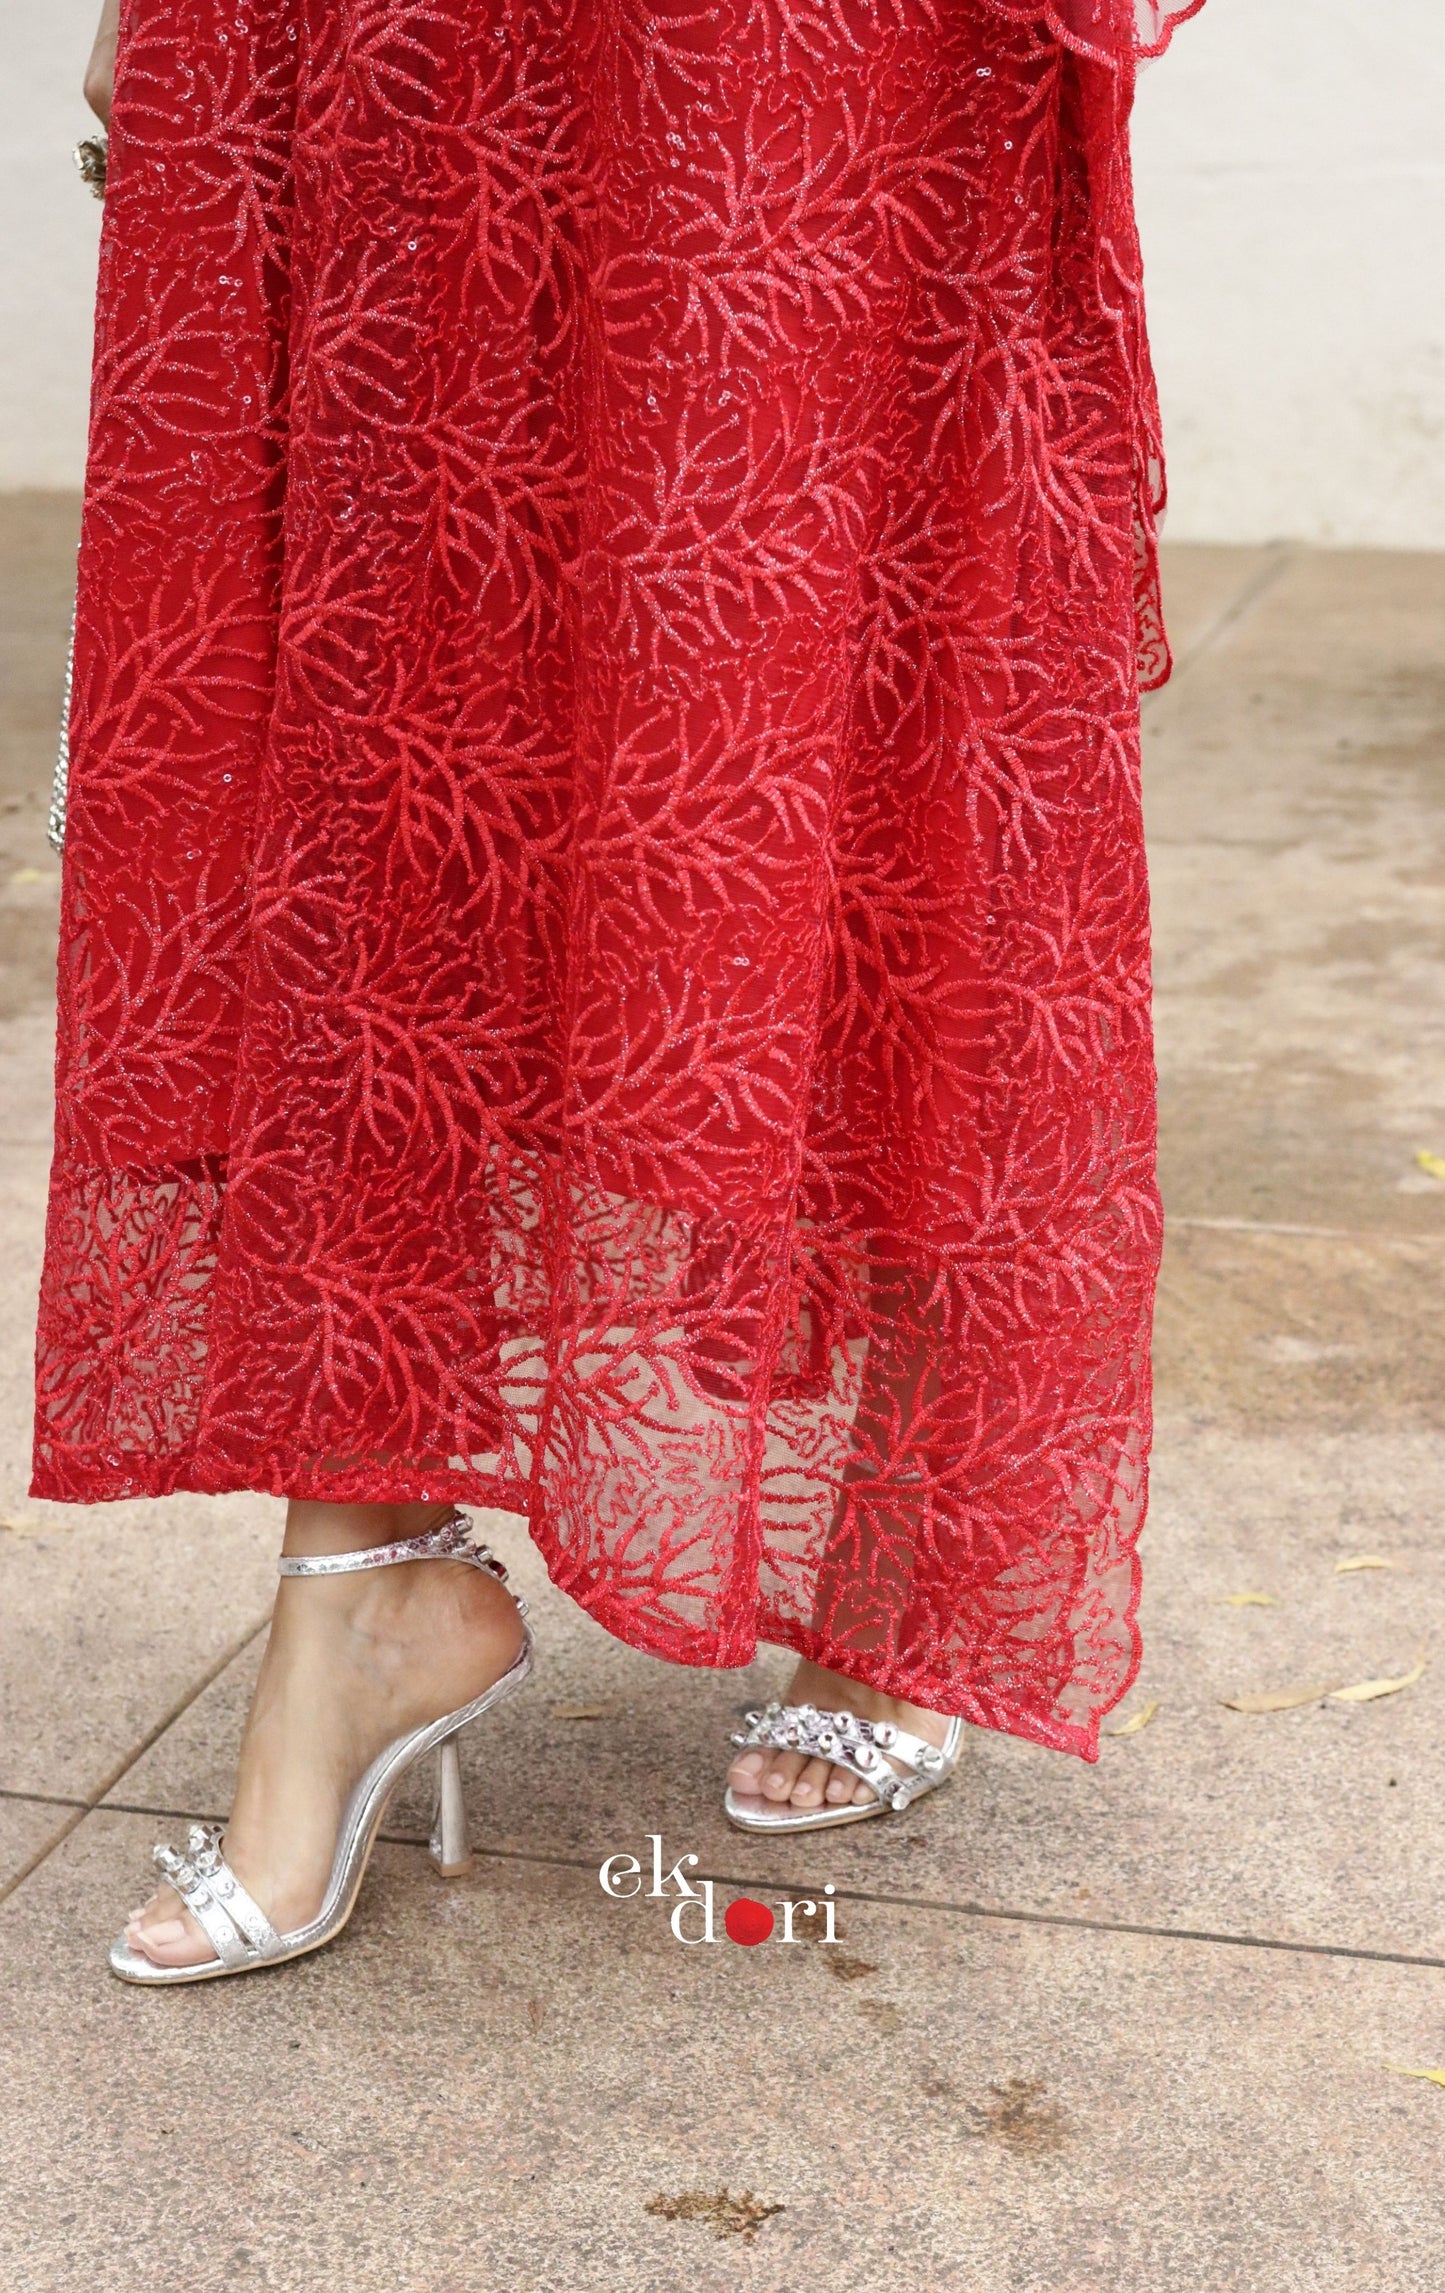 Malti Kaftan Dress : Festive Sequin Net Kaftan Kurta Dress